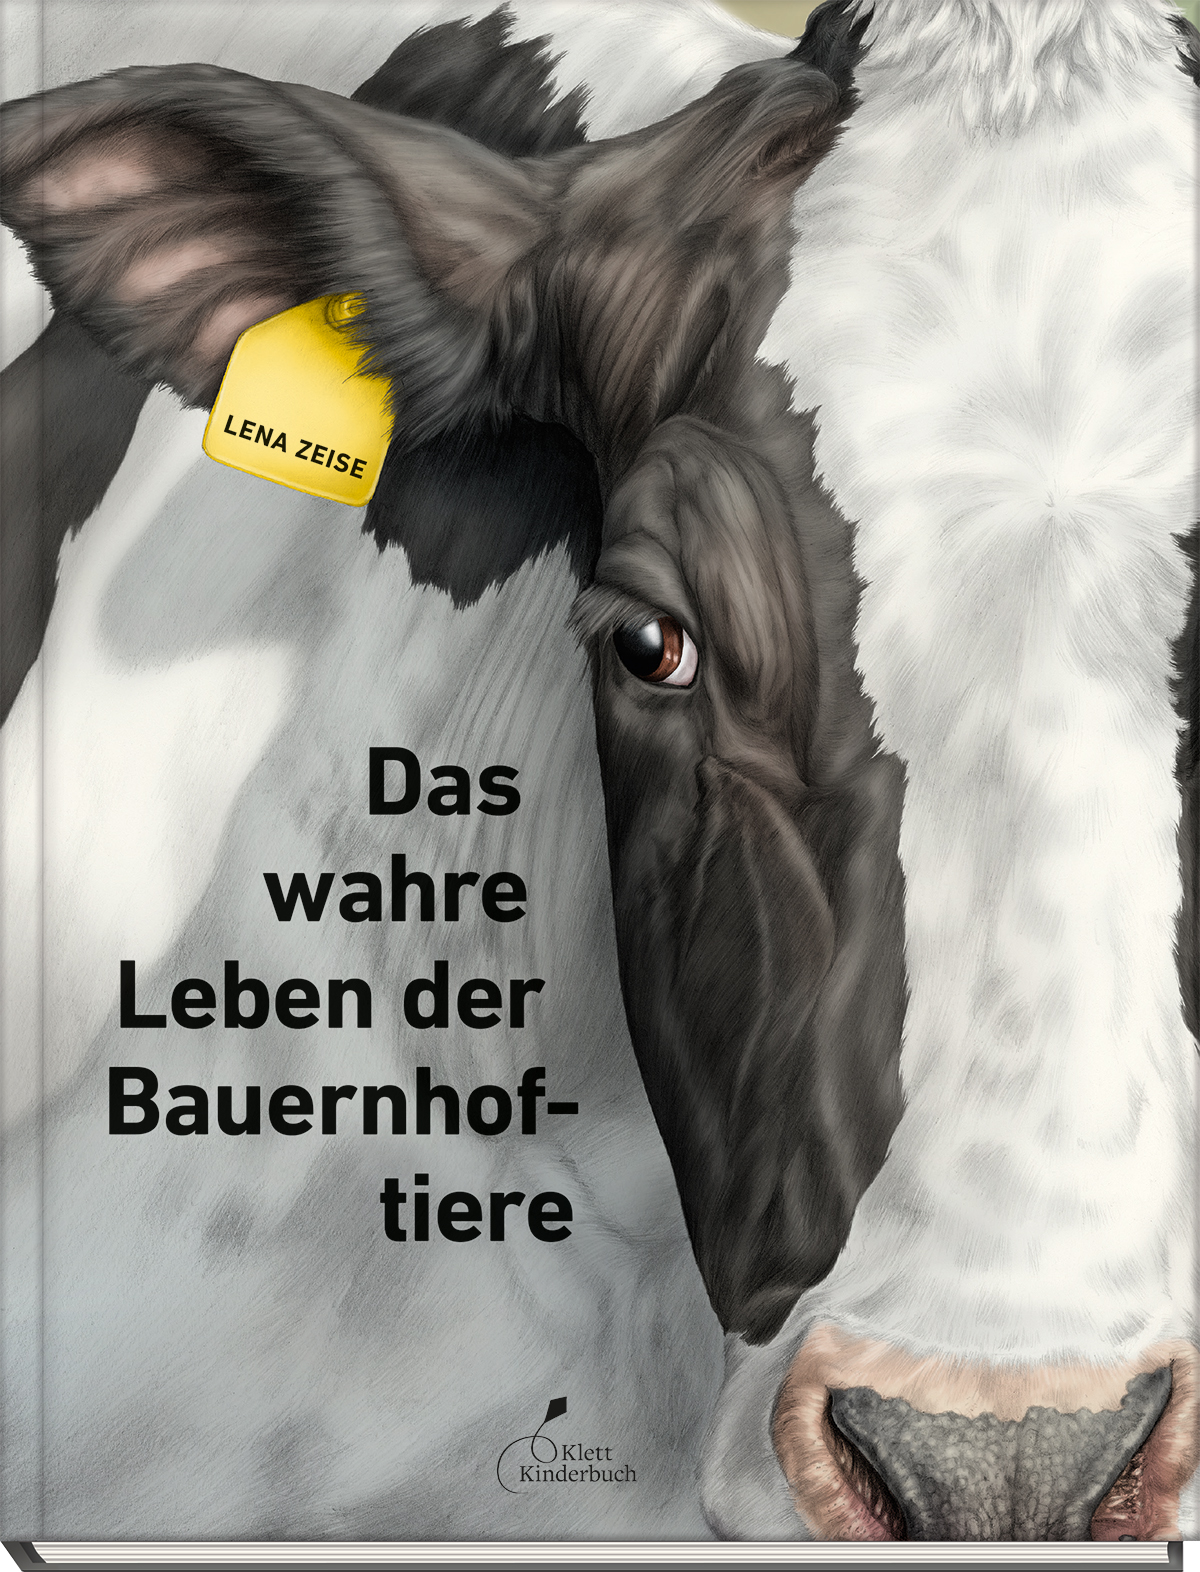 Buchcover "Das wahre Leben der Bauernhoftiere"